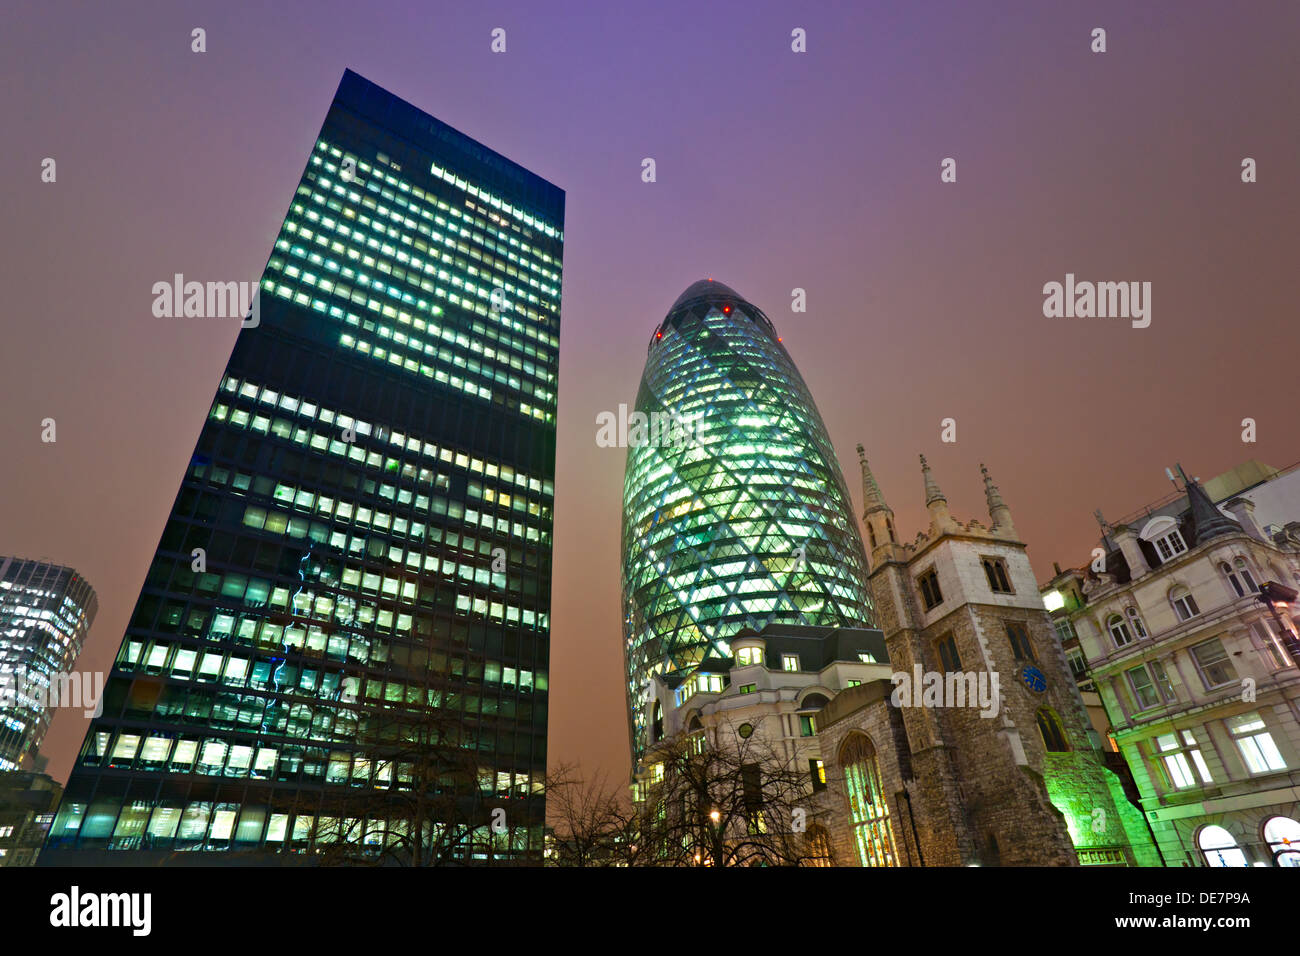 Abend Zeit Schuss von Londons berühmten Wolkenkratzer einschließlich "Gherkin" Ameise Aviva, London, England. Stockfoto